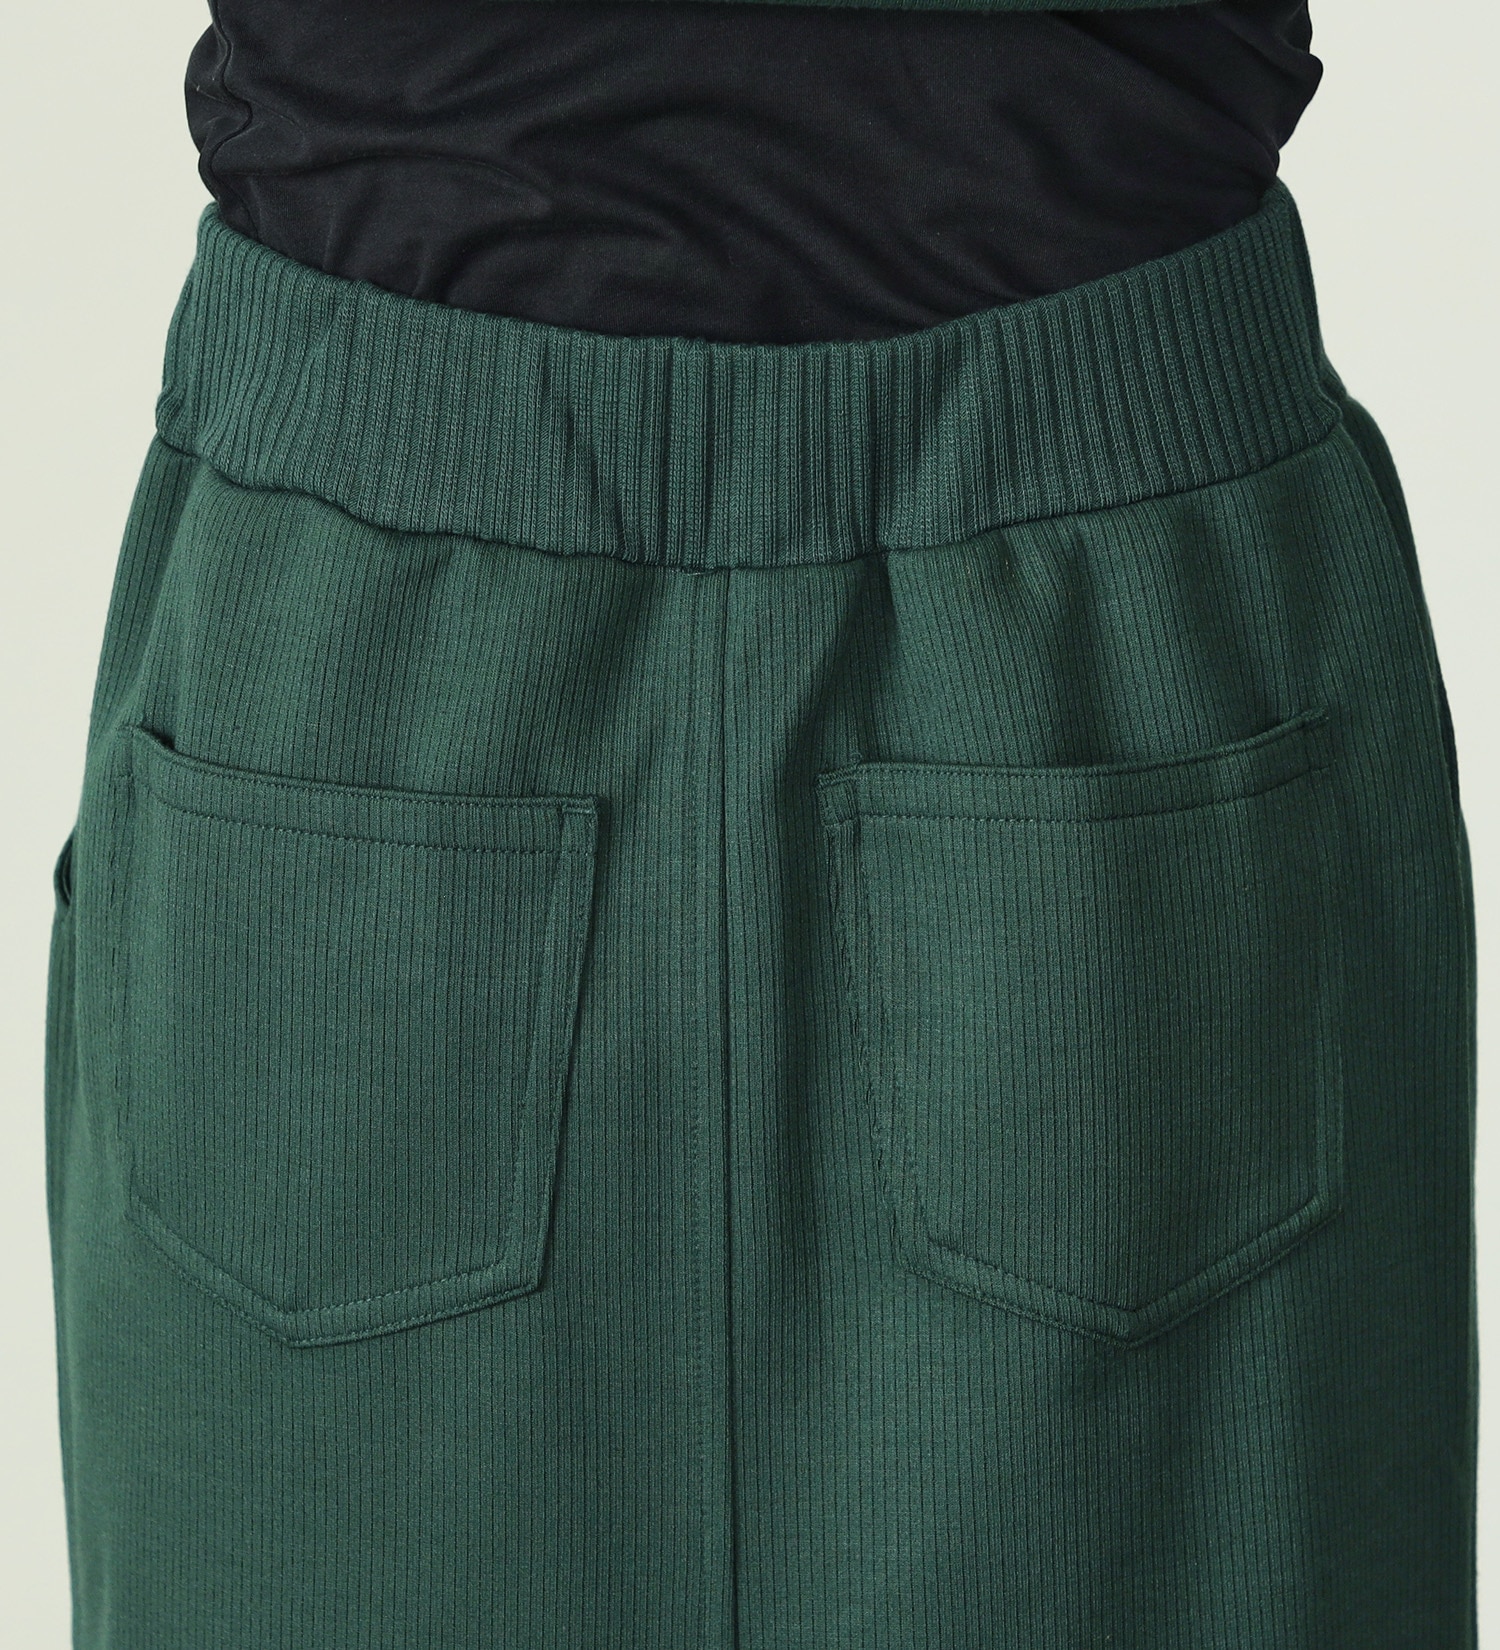 EDWIN(エドウイン)の【SALE】リブタイトスカート【アウトレット店舗・WEB限定】|スカート/スカート/レディース|ダークグリーン